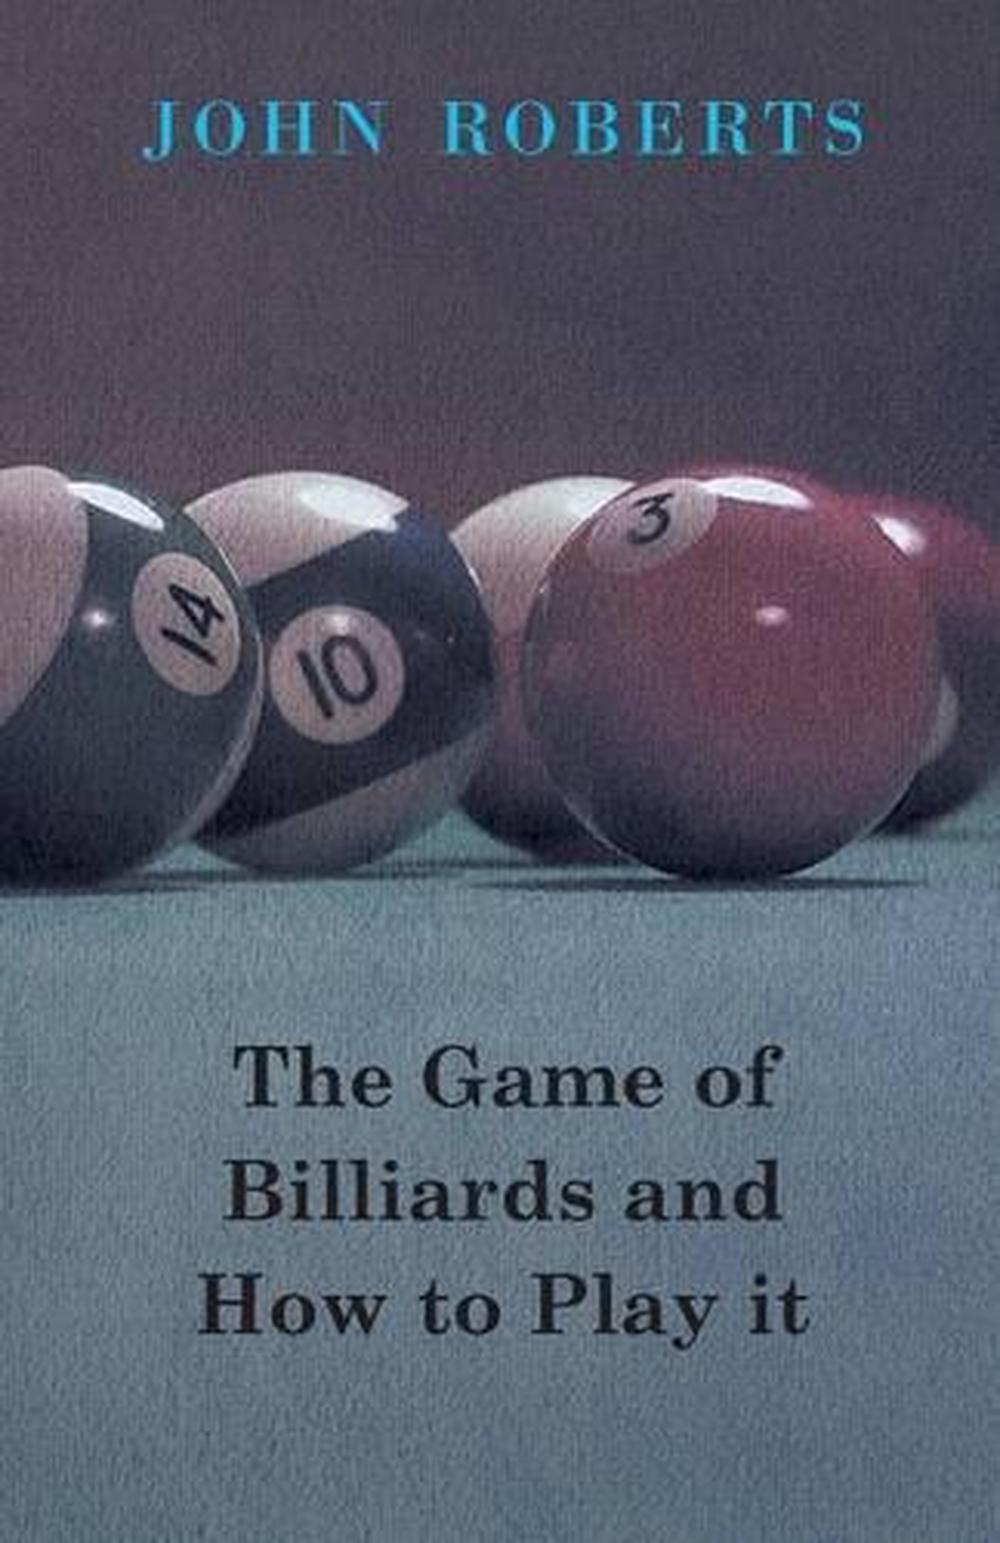 carom billiards books